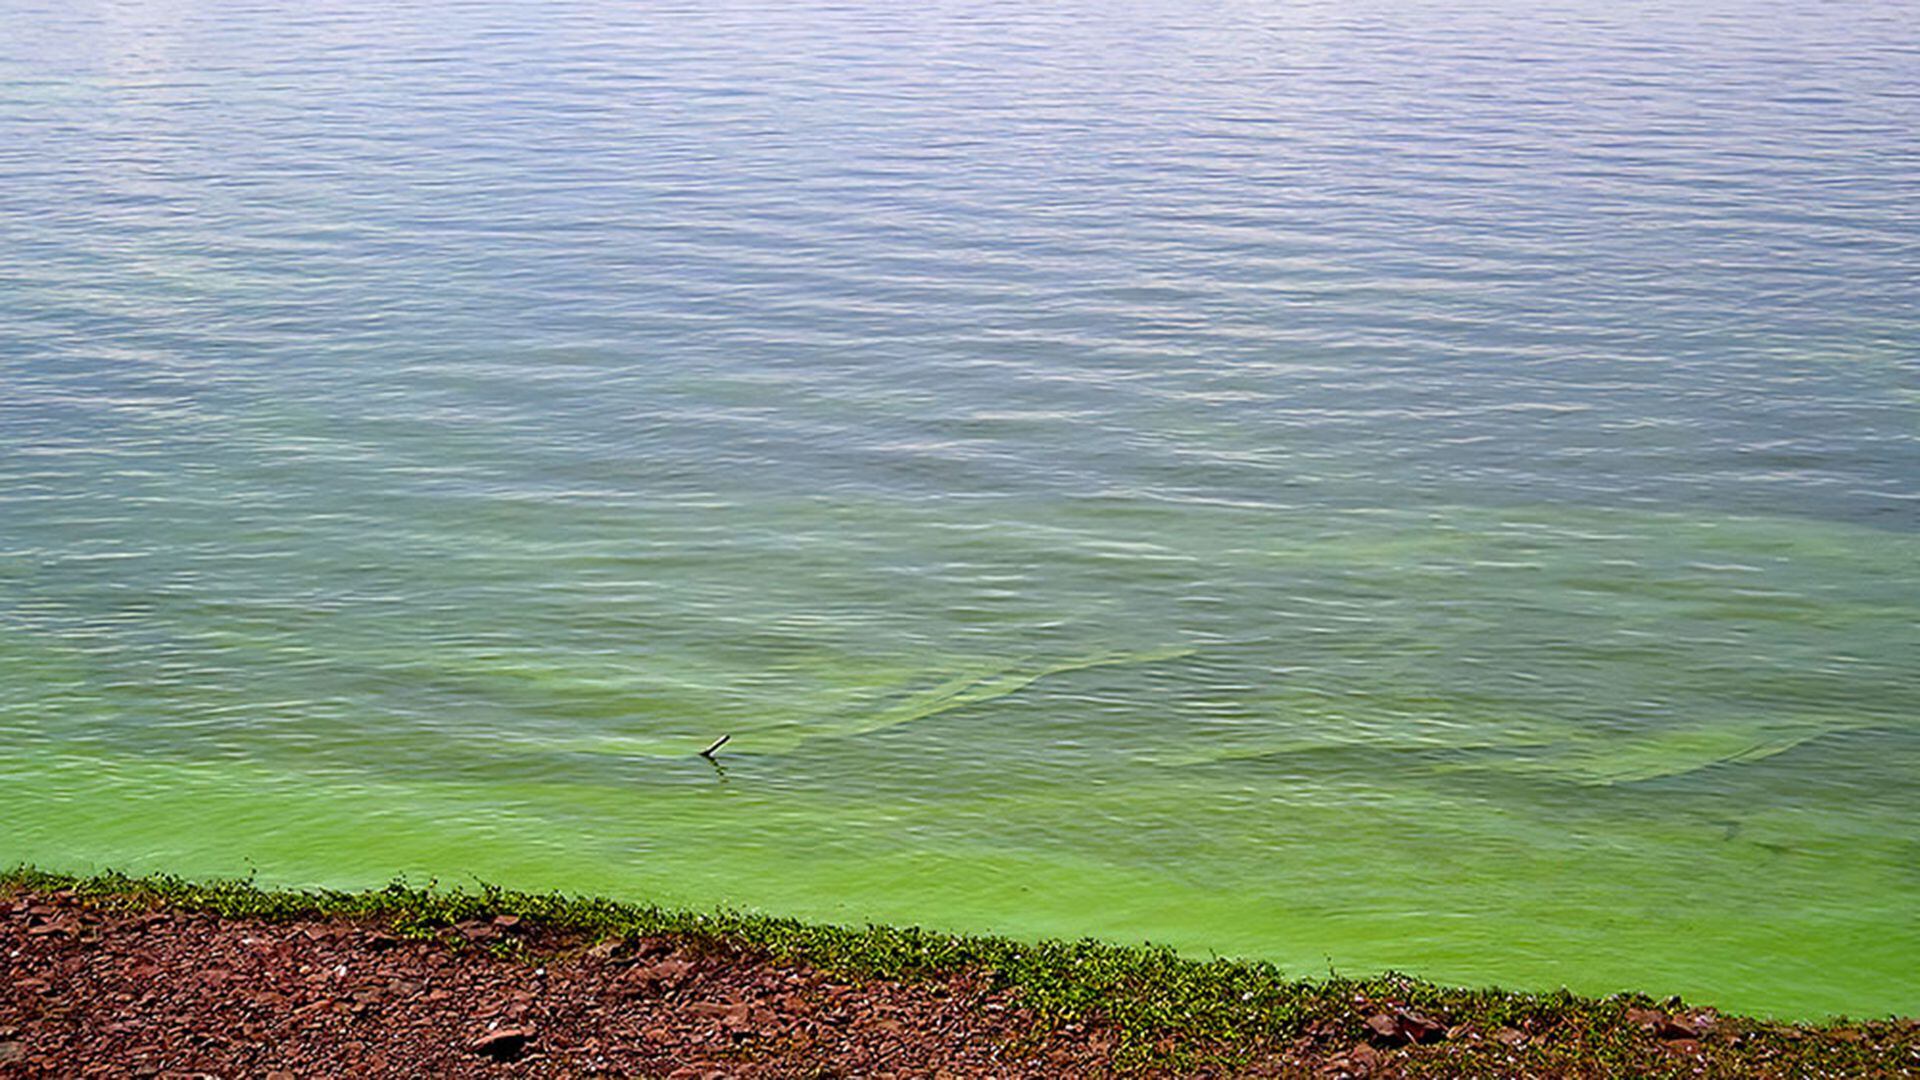 La presencia de estos organismos se da en aguas cuya superficie es verdosa